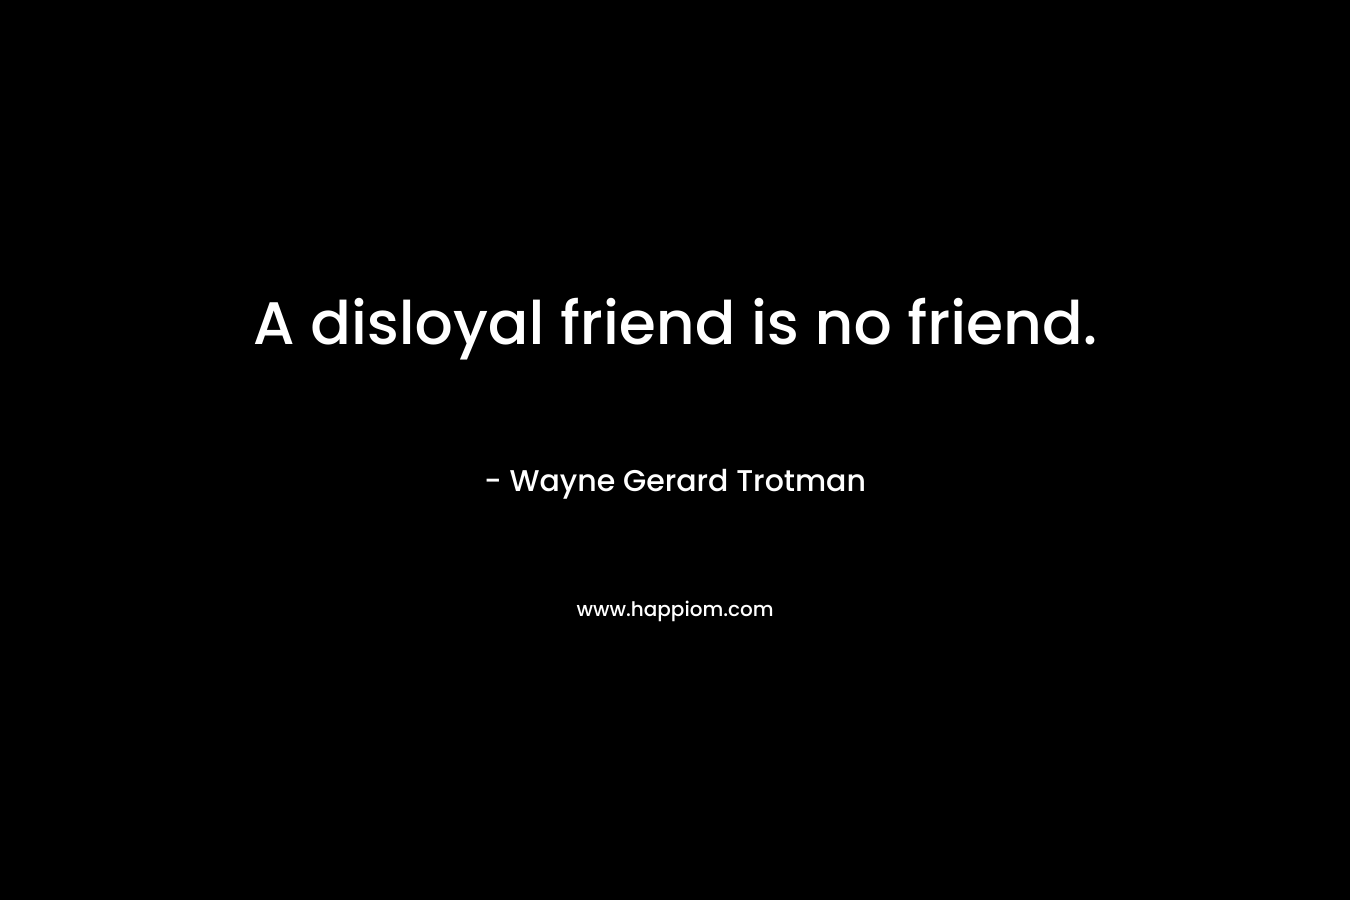 A disloyal friend is no friend.